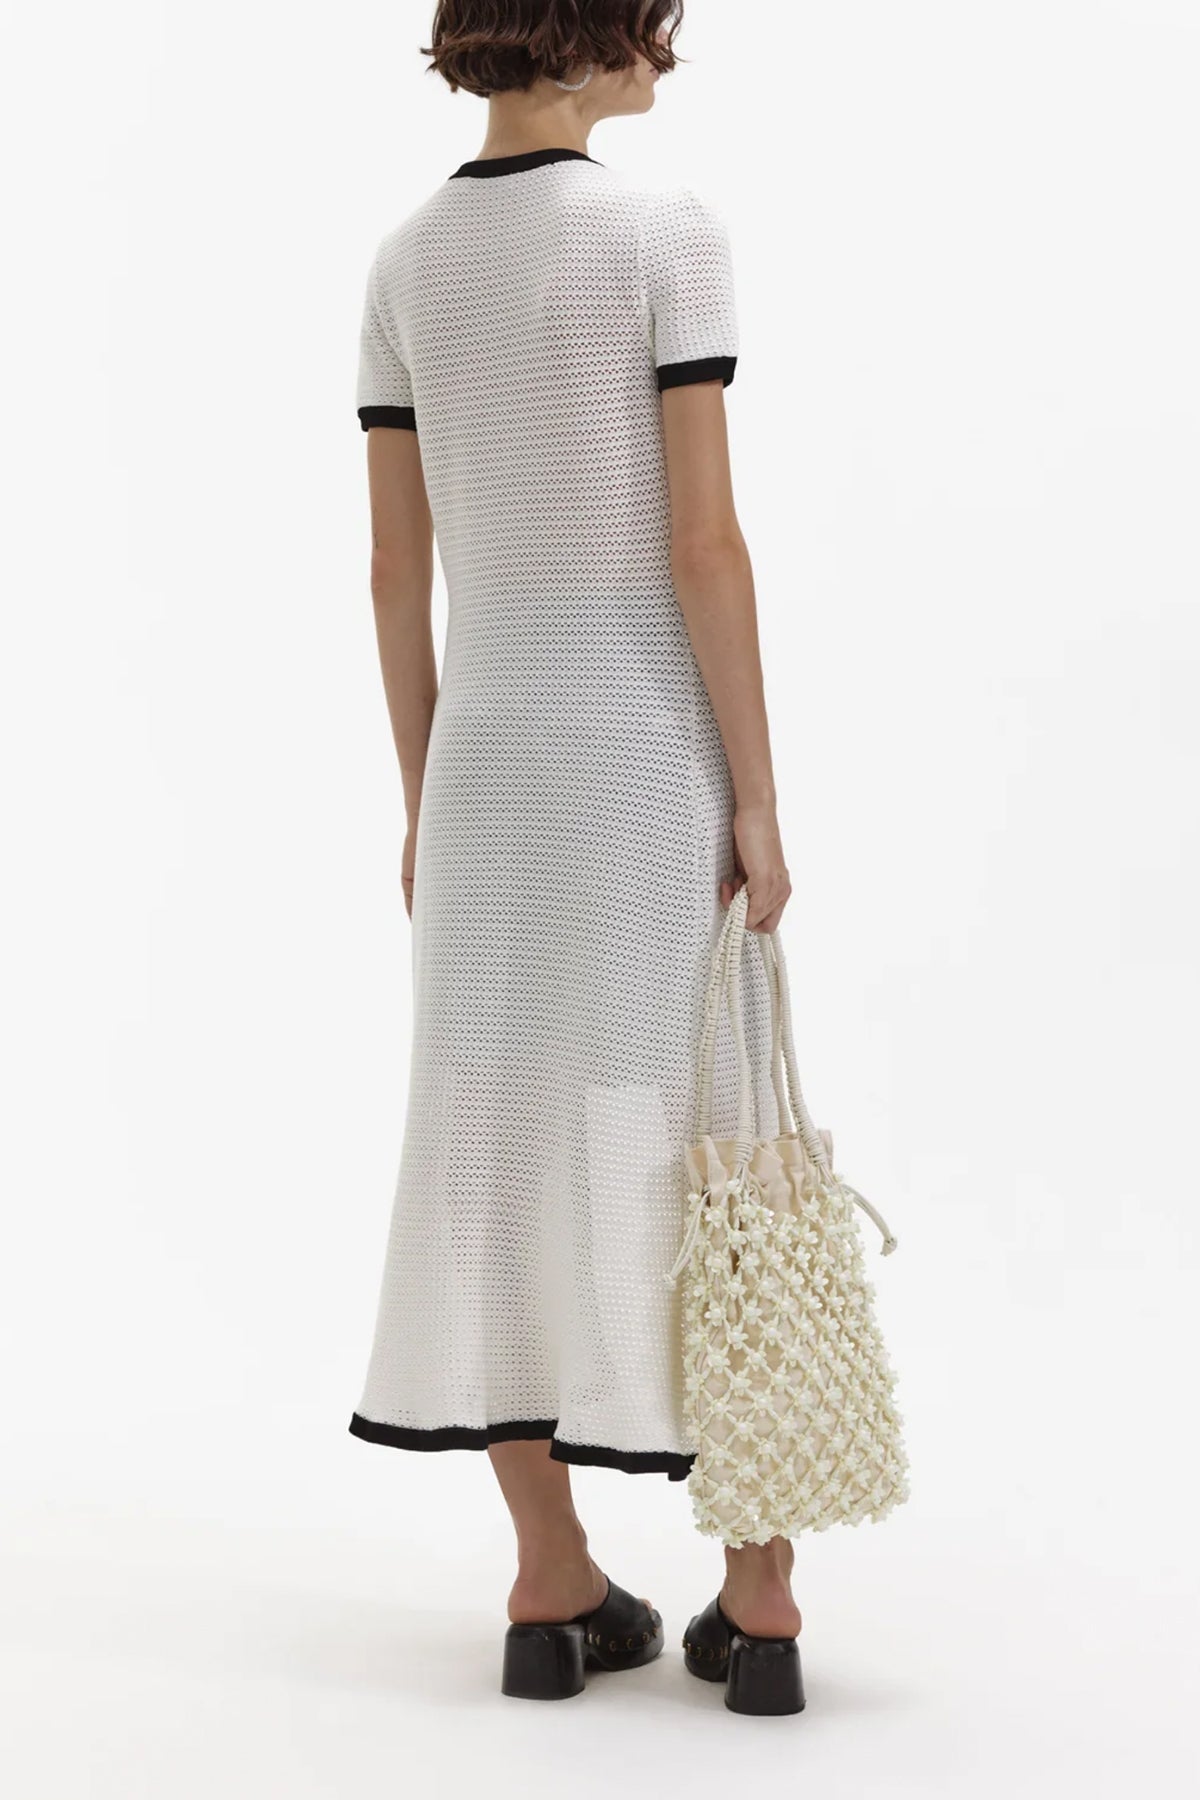 White Crochet Midi Dress - shop-olivia.com